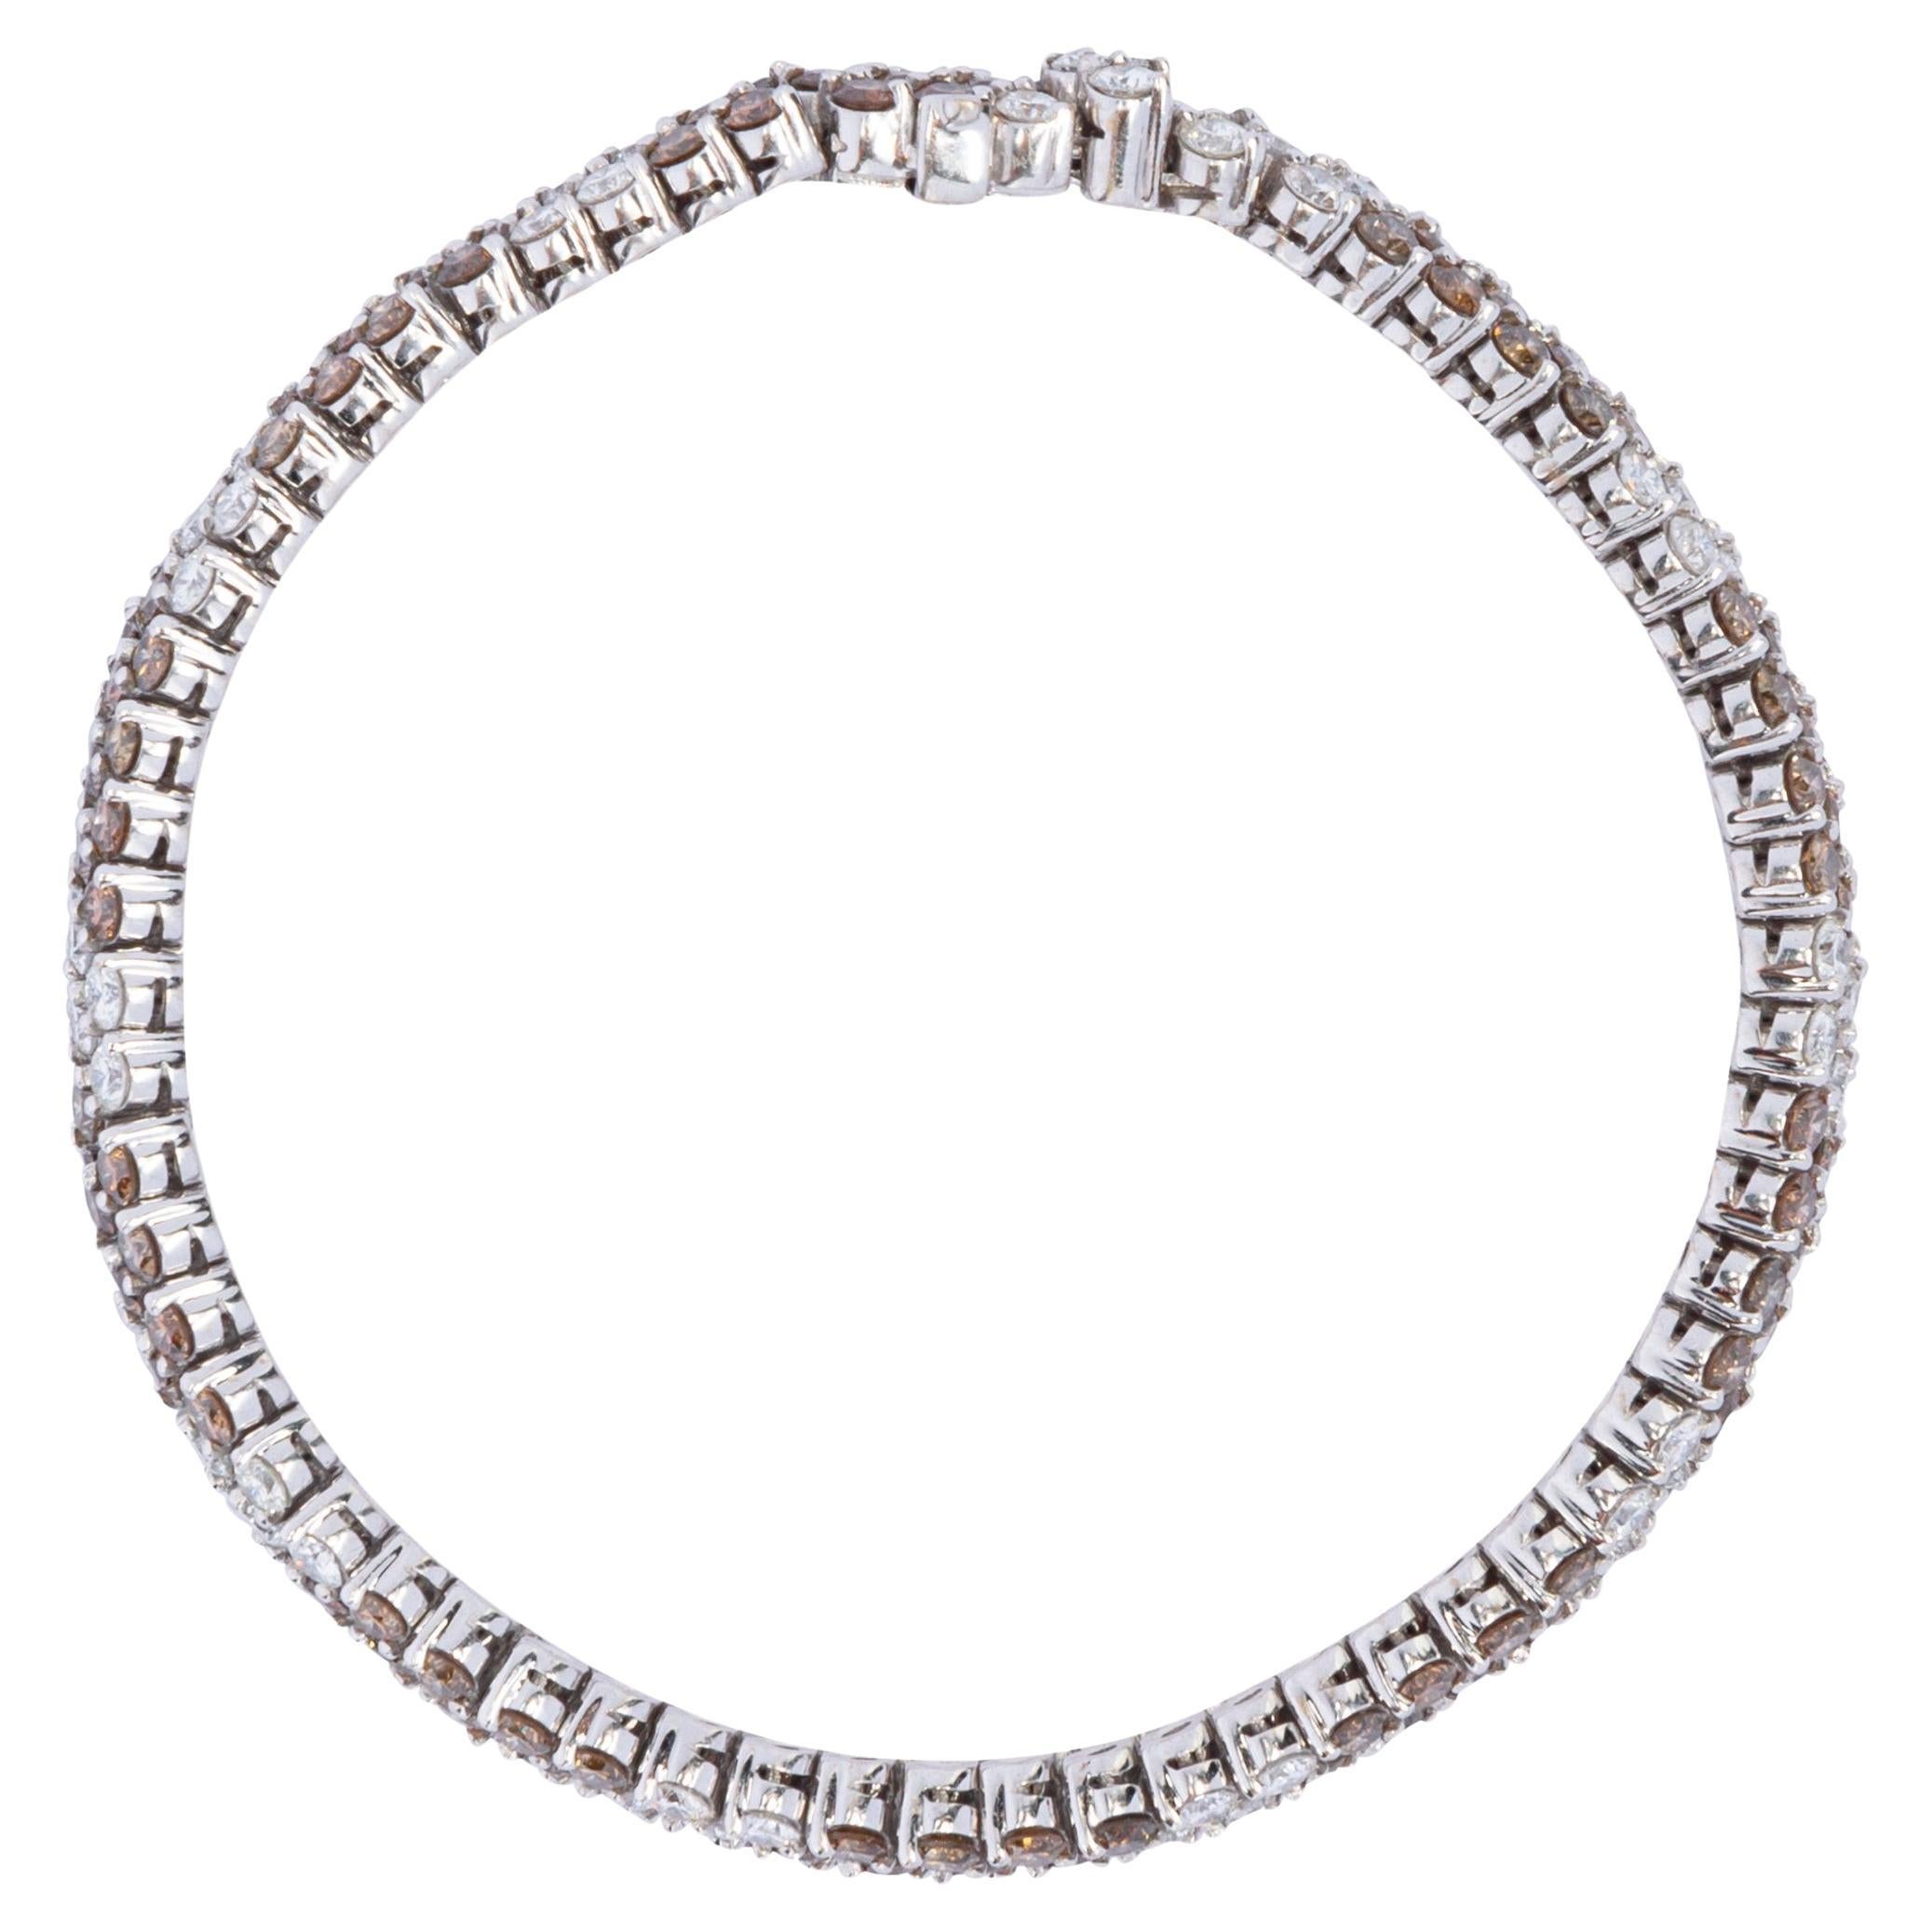 Collection design Alex Jona, fabriqué à la main en Italie, bracelet en or blanc 18 carats serti d'une alternance de diamants blancs et champagne de taille ronde, il présente 7,73 carats de diamants champagne et 4,22 carats de diamants blancs. Le